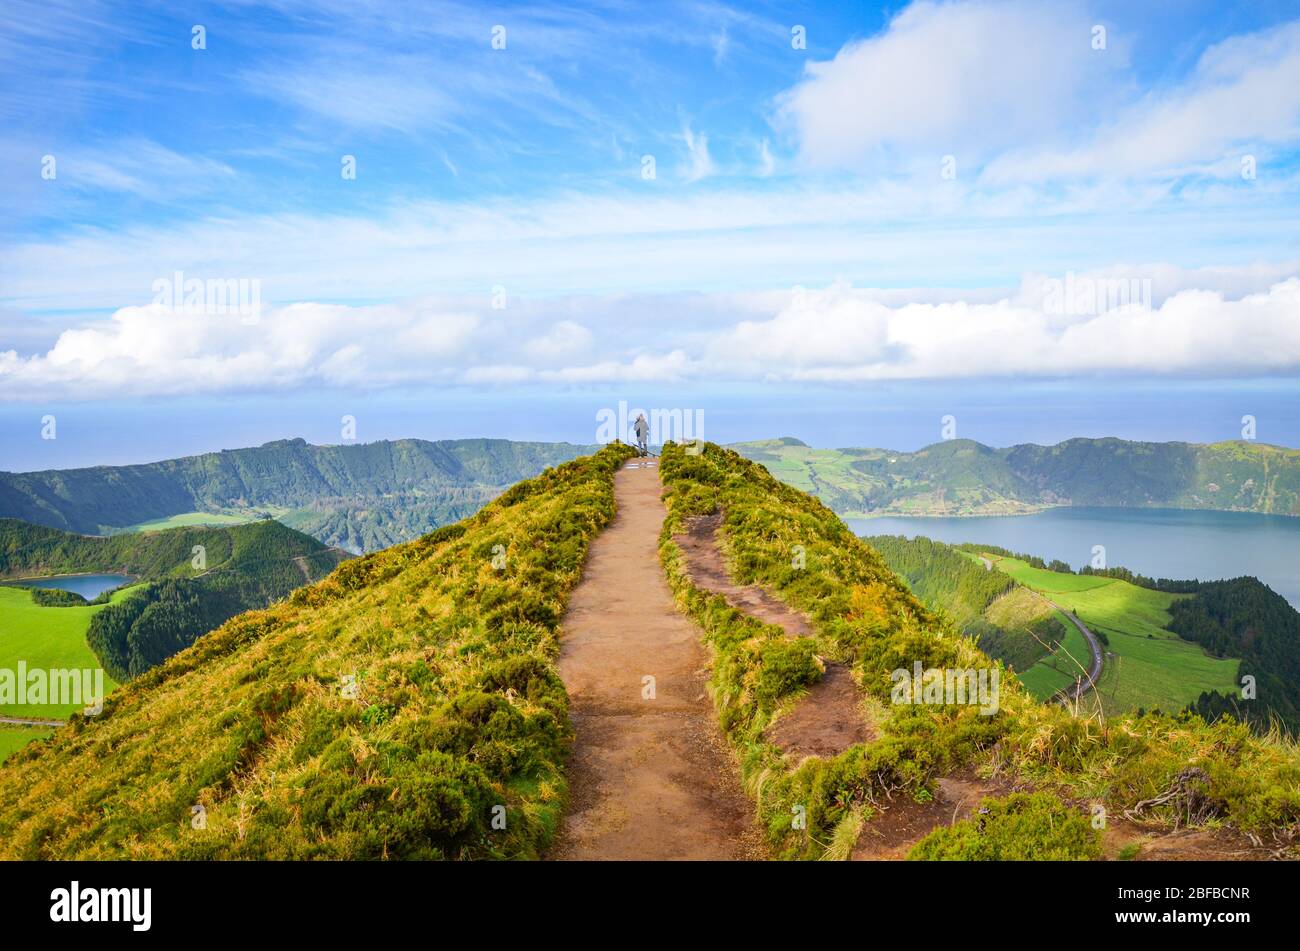 Ein Weg zum Aussichtspunkt Miradouro da Boca do Inferno in Sao Miguel Insel, Azoren, Portugal. Erstaunliche Kraterseen umgeben von grünen Feldern und Wäldern. Tourist am Ende der landschaftlich schönen Weg. Stockfoto